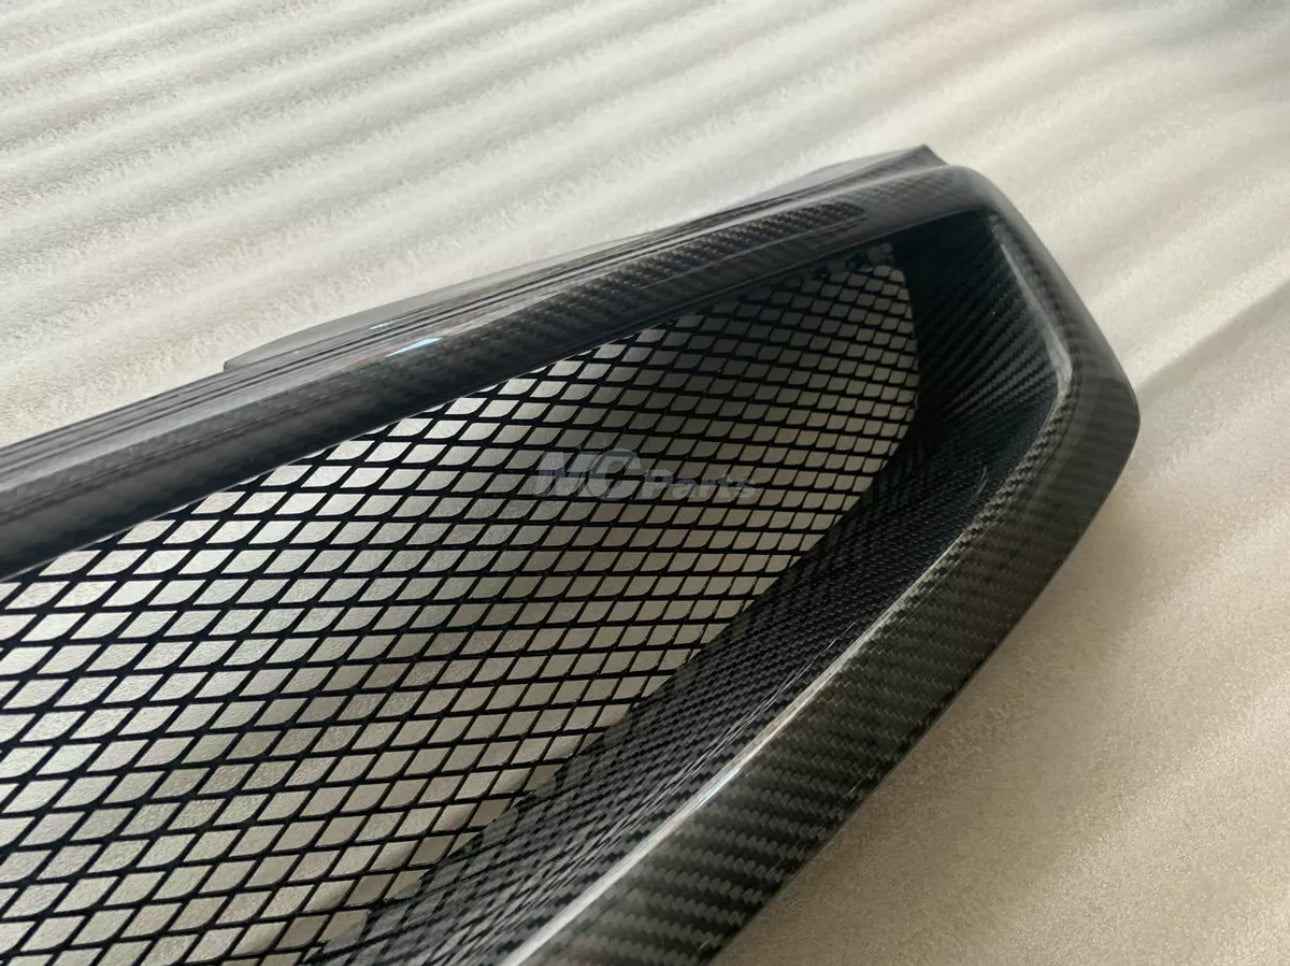 03-07 G35 Coupe Carbon fiber mesh grille